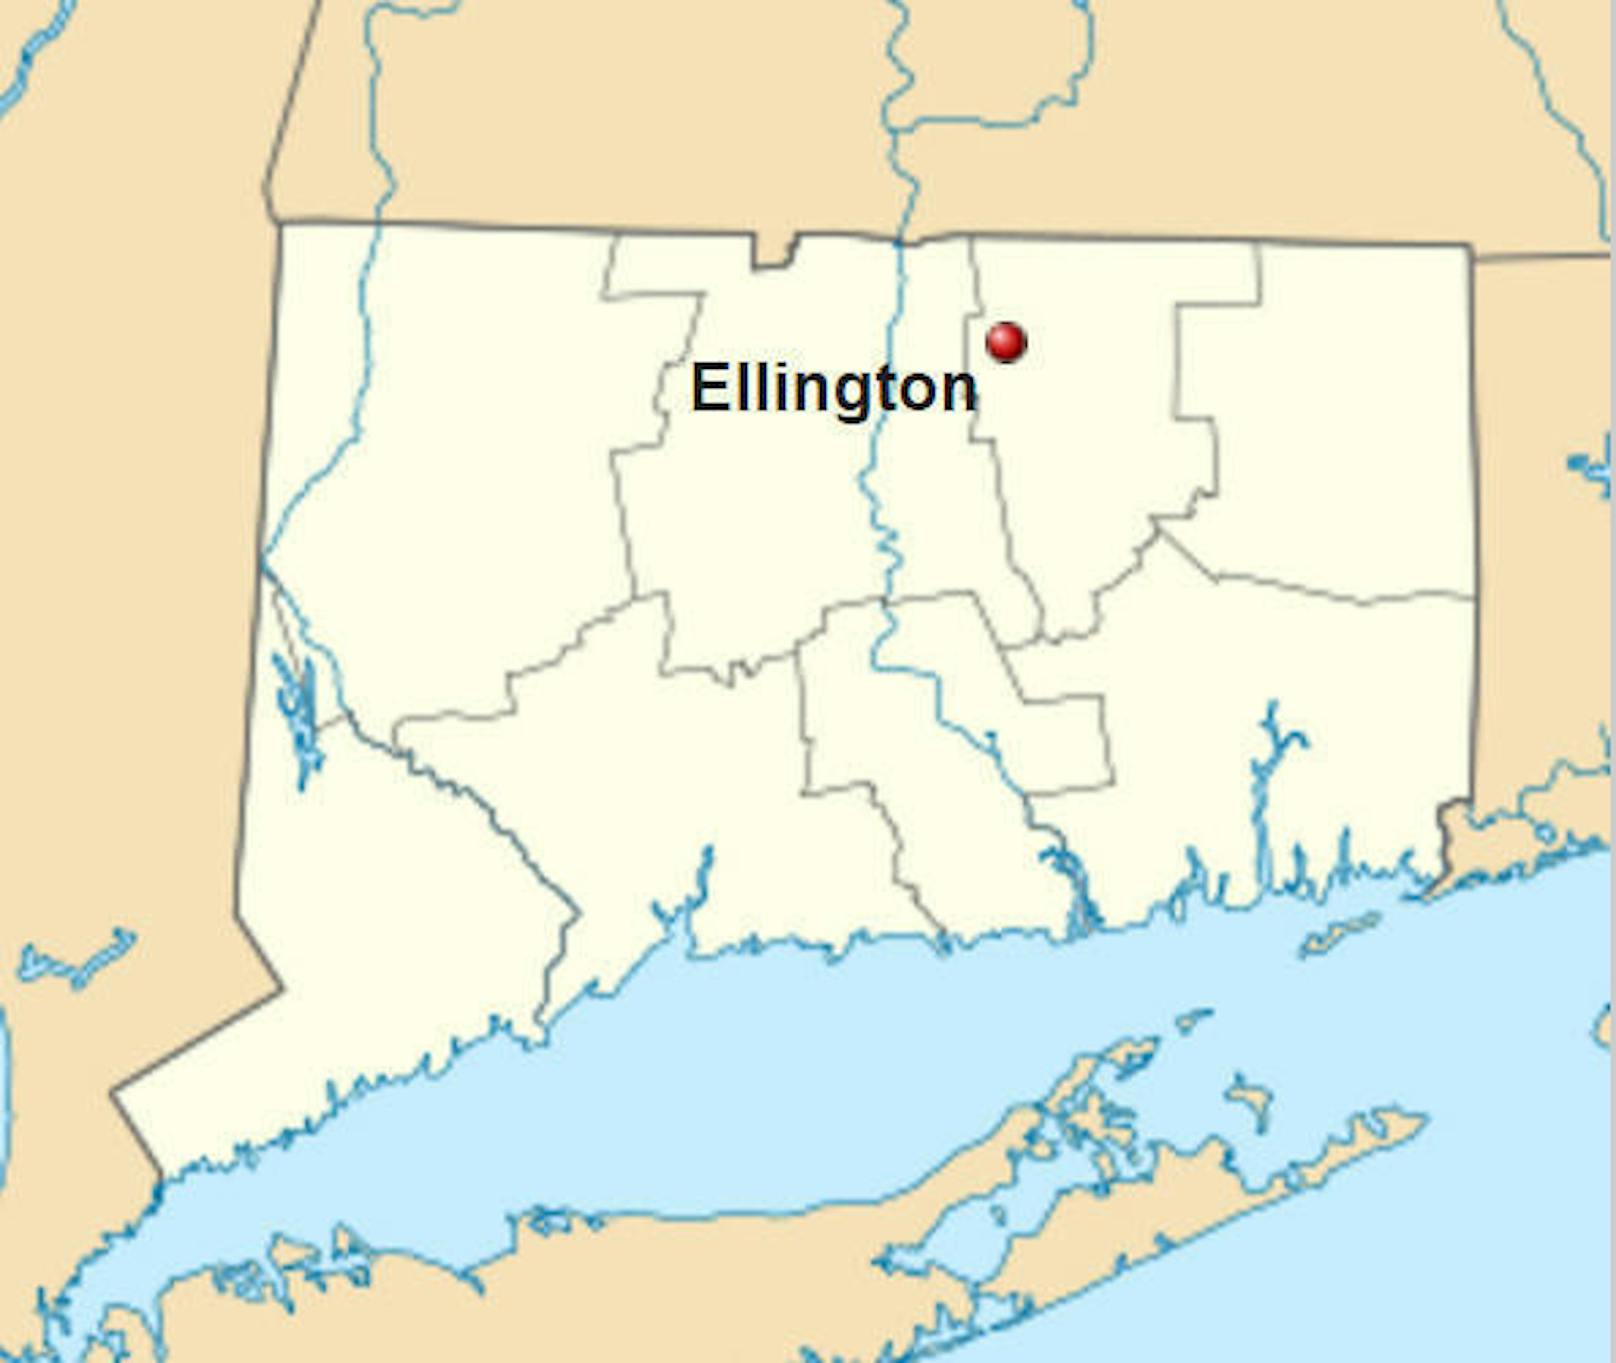 Das Tötungsdelikt ereignete sich Ende 2015 in Ellington im US-Bundesstaat Connecticut.